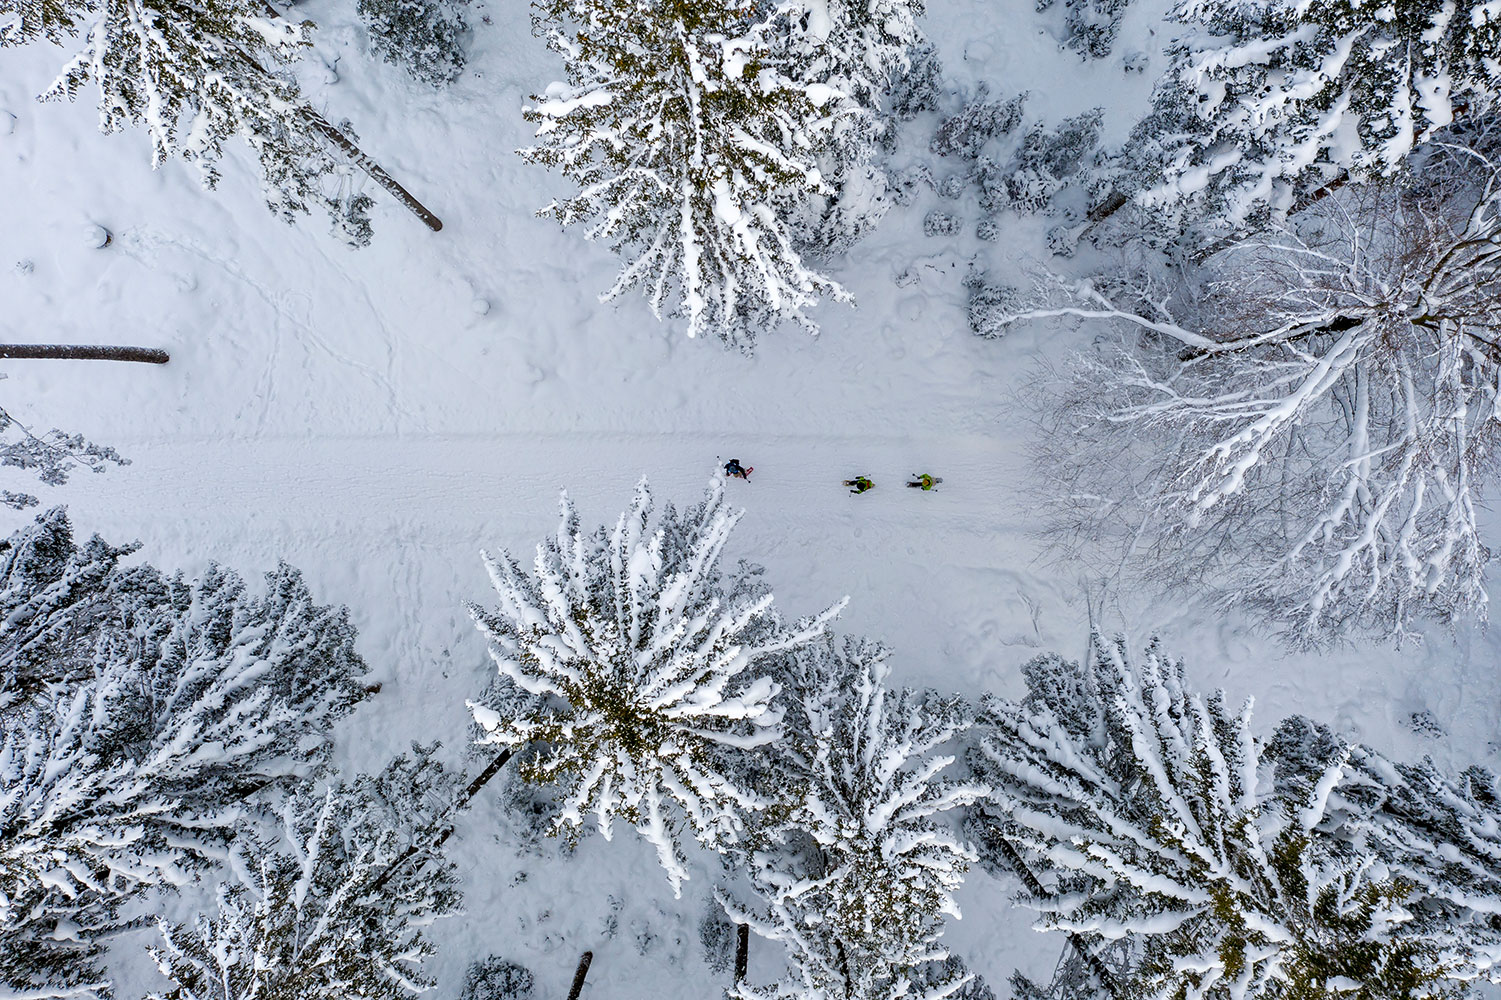 Luftaufnahme der drei Schneeschuhwandernden Personen und den mit Schnee bedeckten Tannen.